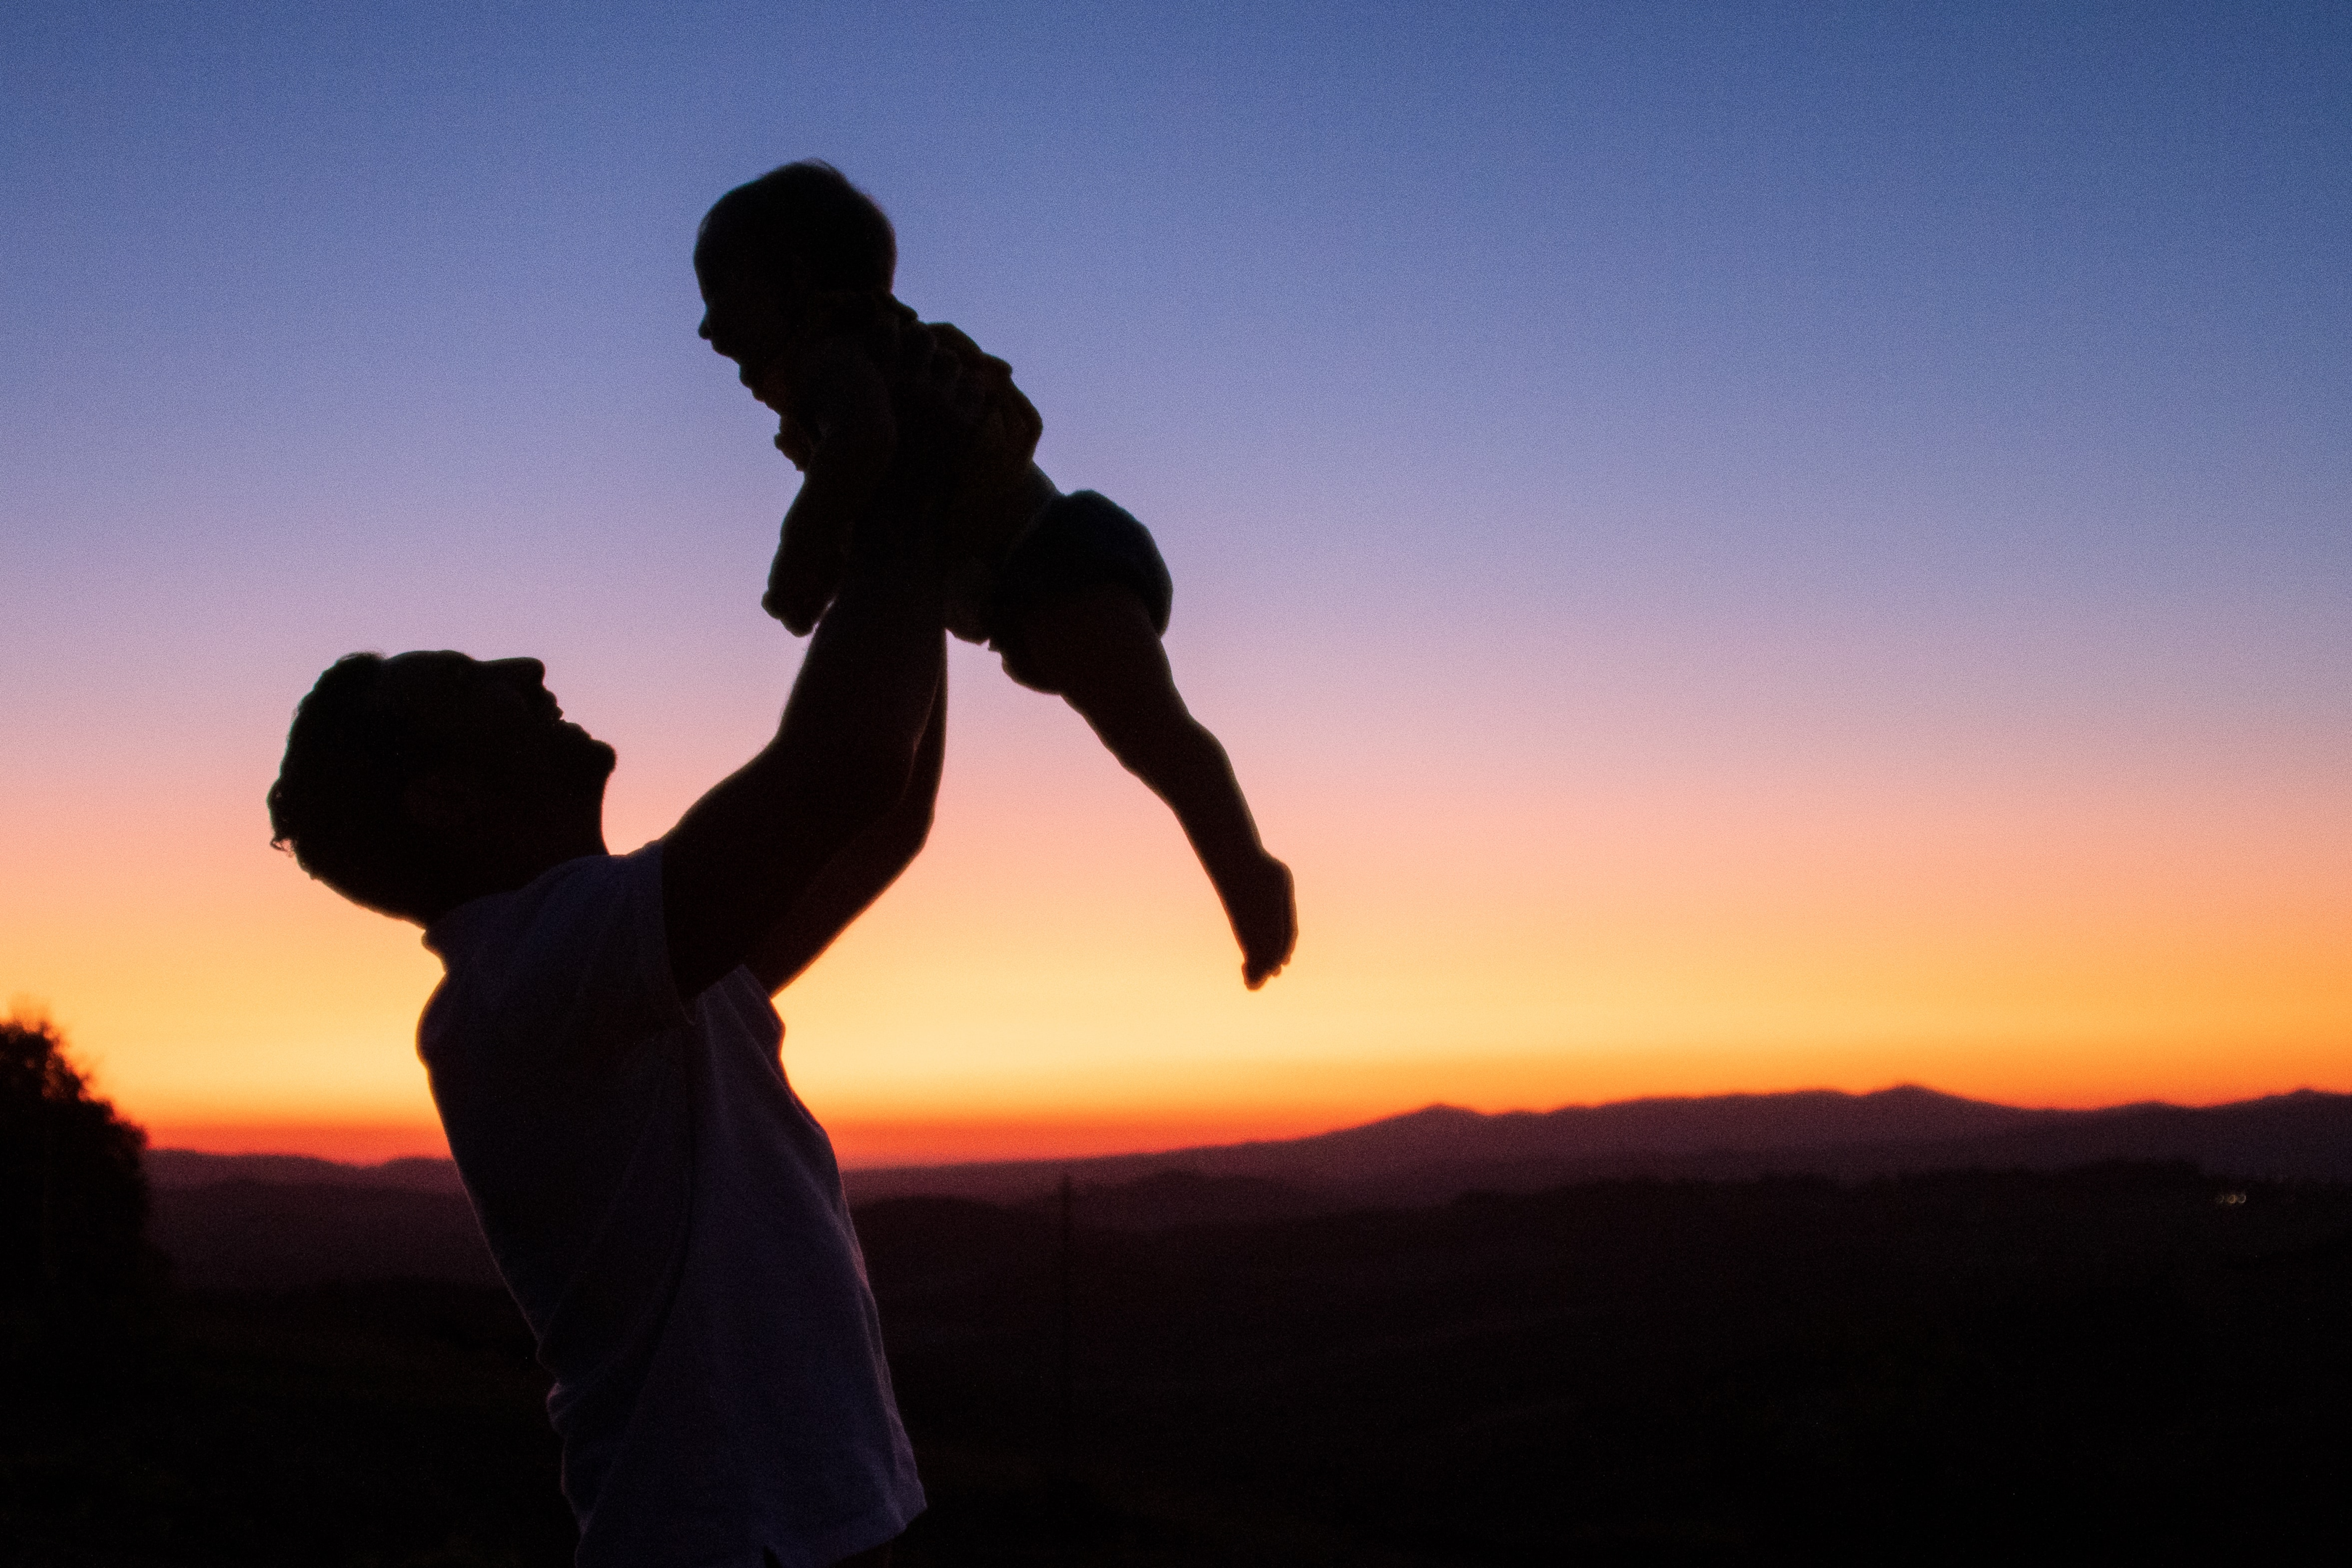 Joy of fatherhood